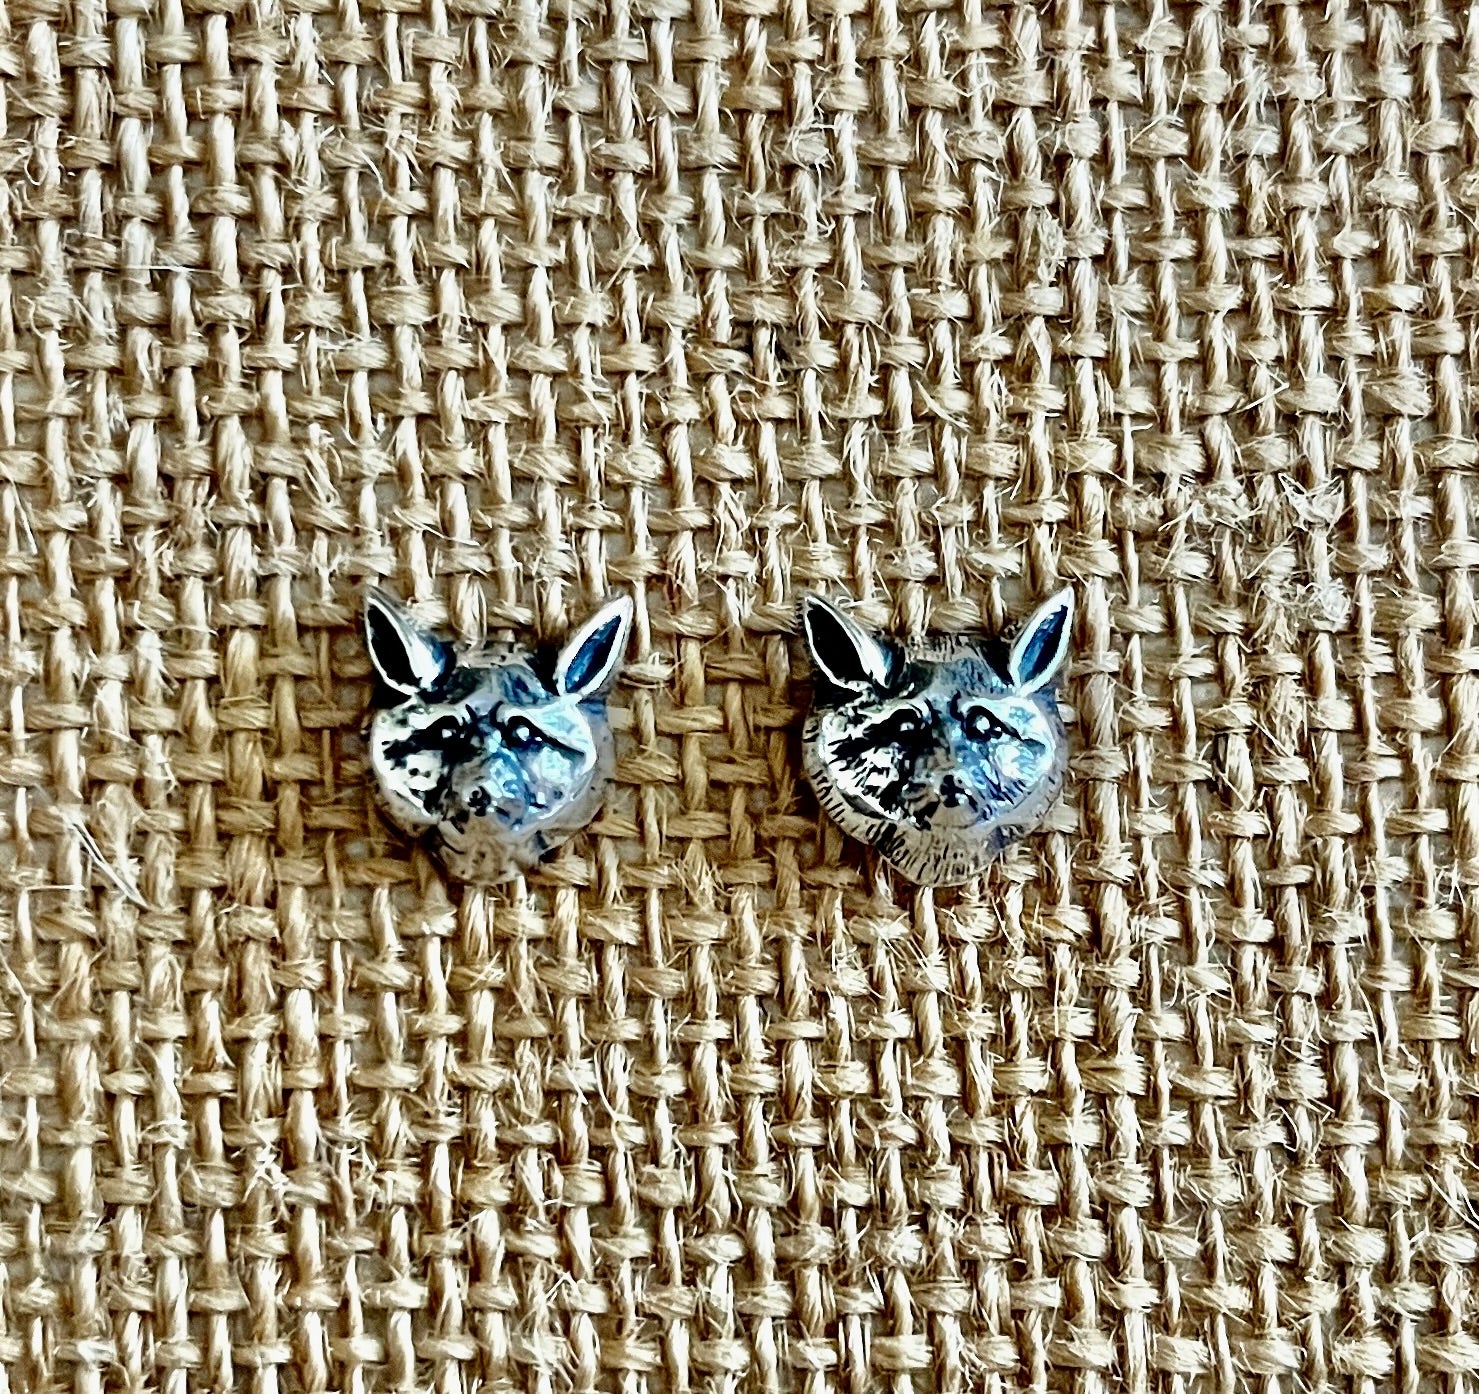 Finicky Fox Post Earrings